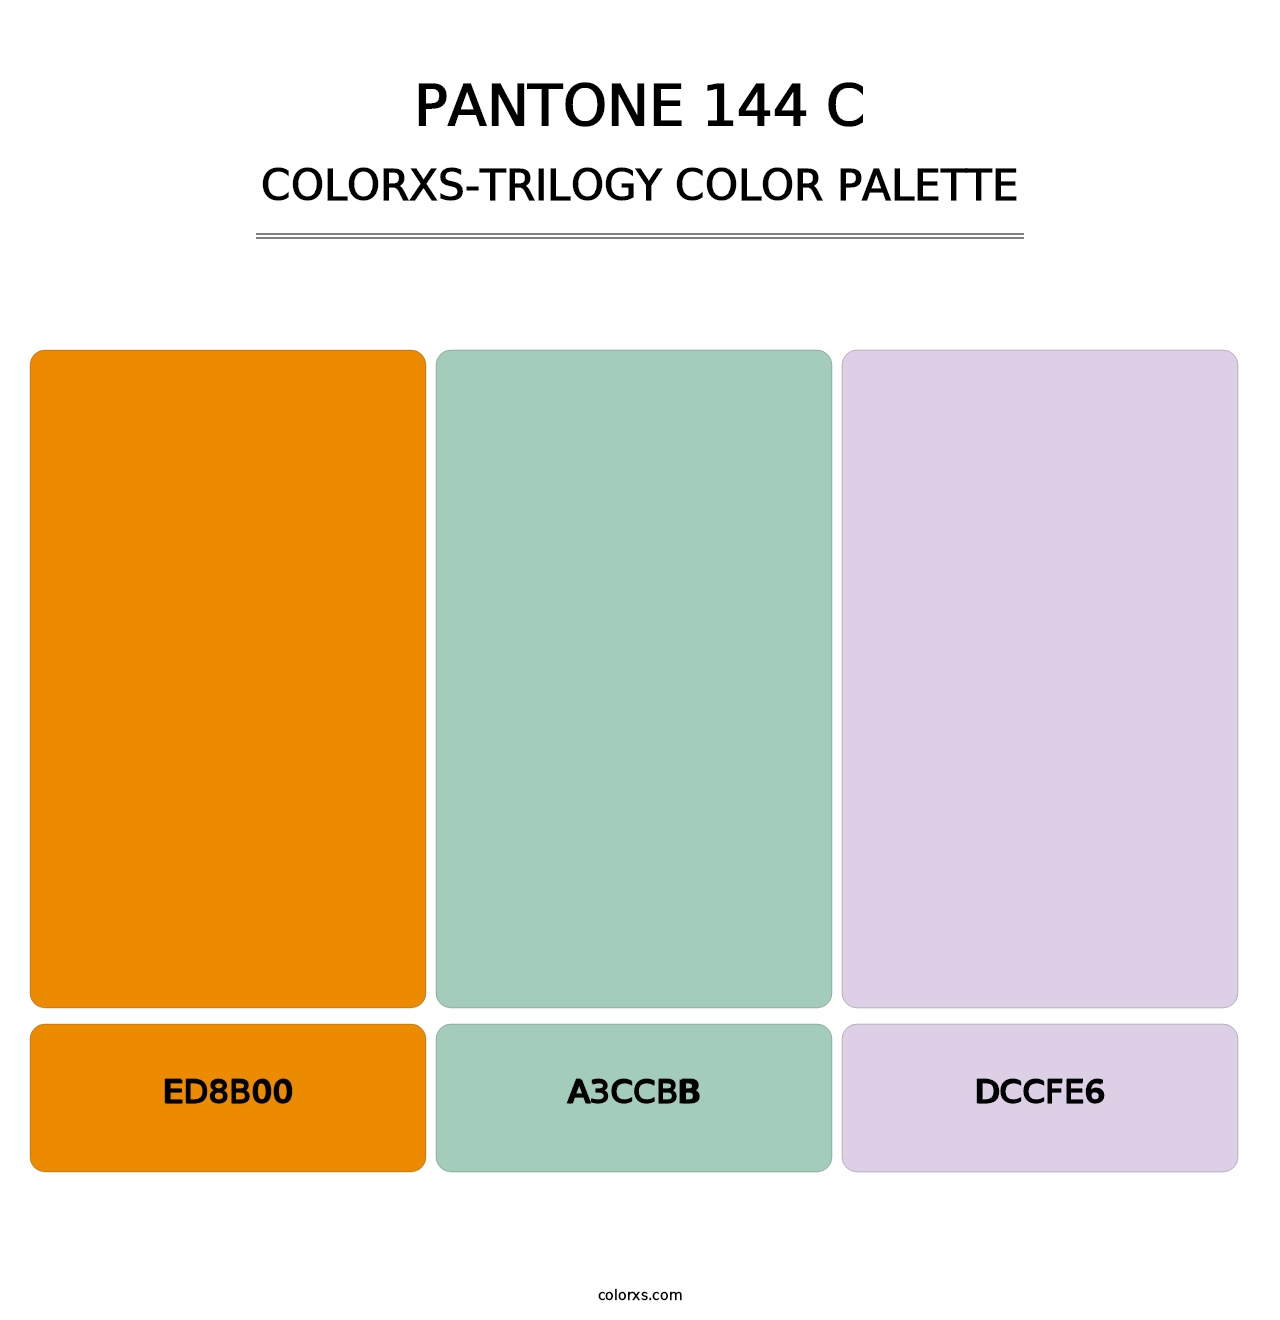 PANTONE 144 C - Colorxs Trilogy Palette